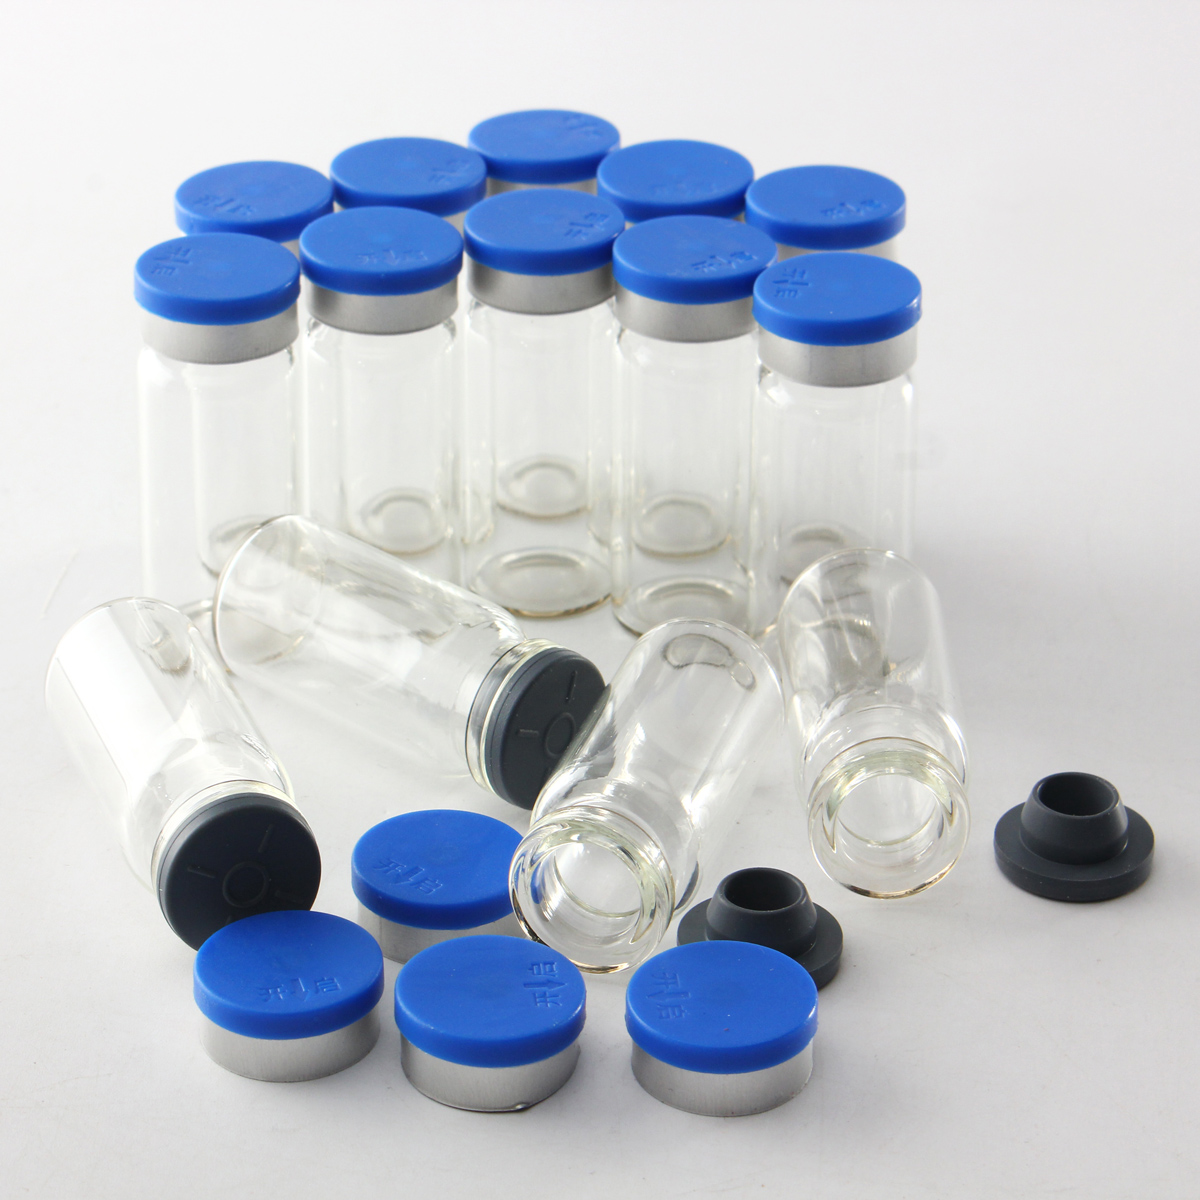 100Pcs-10mL-Clear-Glass-Bottle-Storage-Vials-w-Stopper-Flip-Off-Seals-Aluminum-Blue-Caps-1088076-5